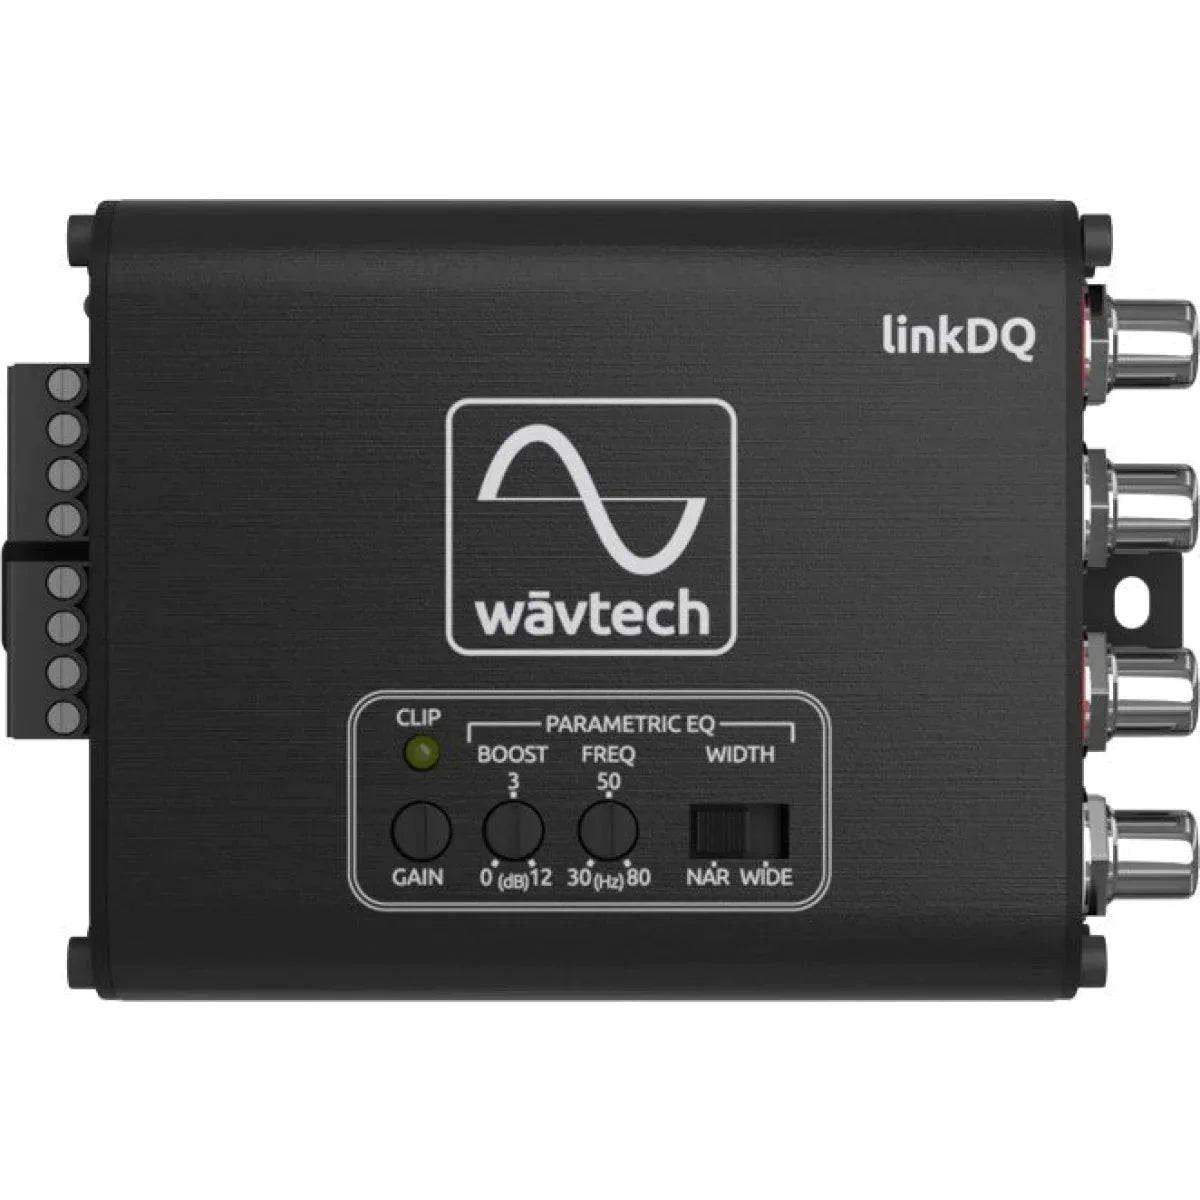 WAVTECH Wavtech linkDQHigh-Low High-Low Adapter Adapter